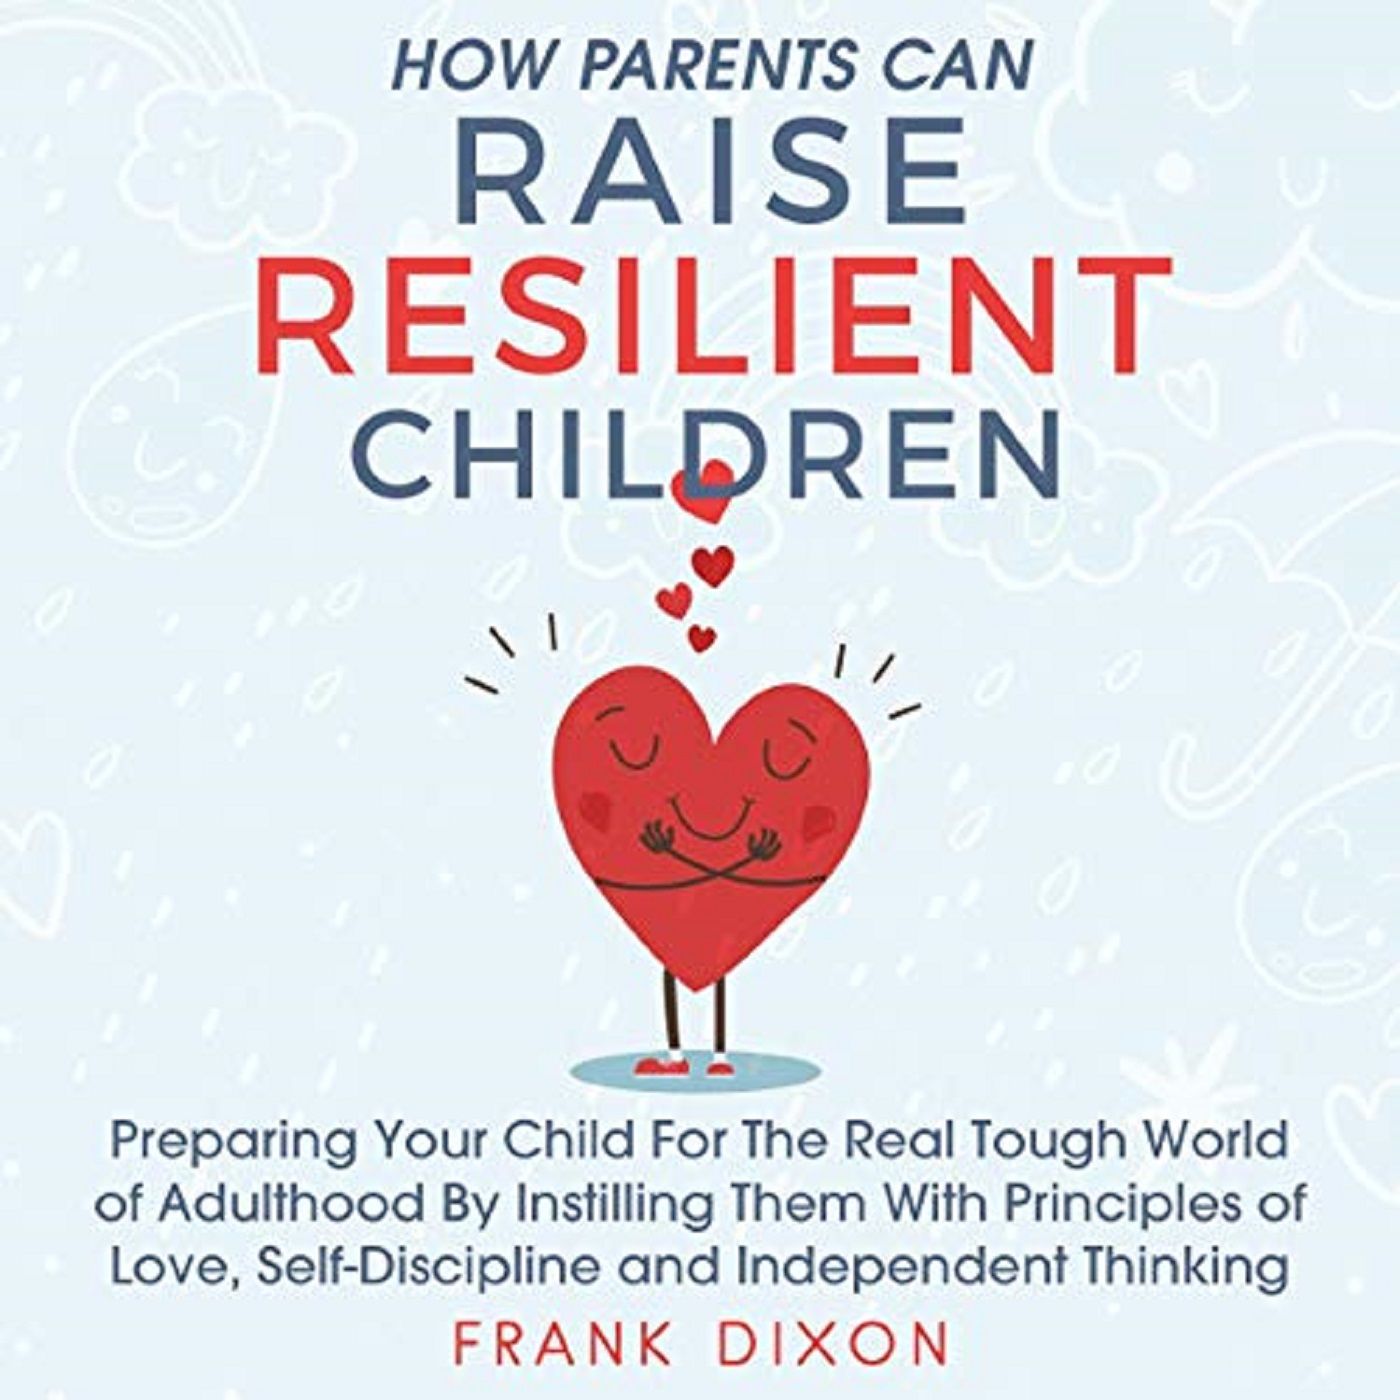 How Parents Can Raise Resilient Children by Frank Dixon ch2